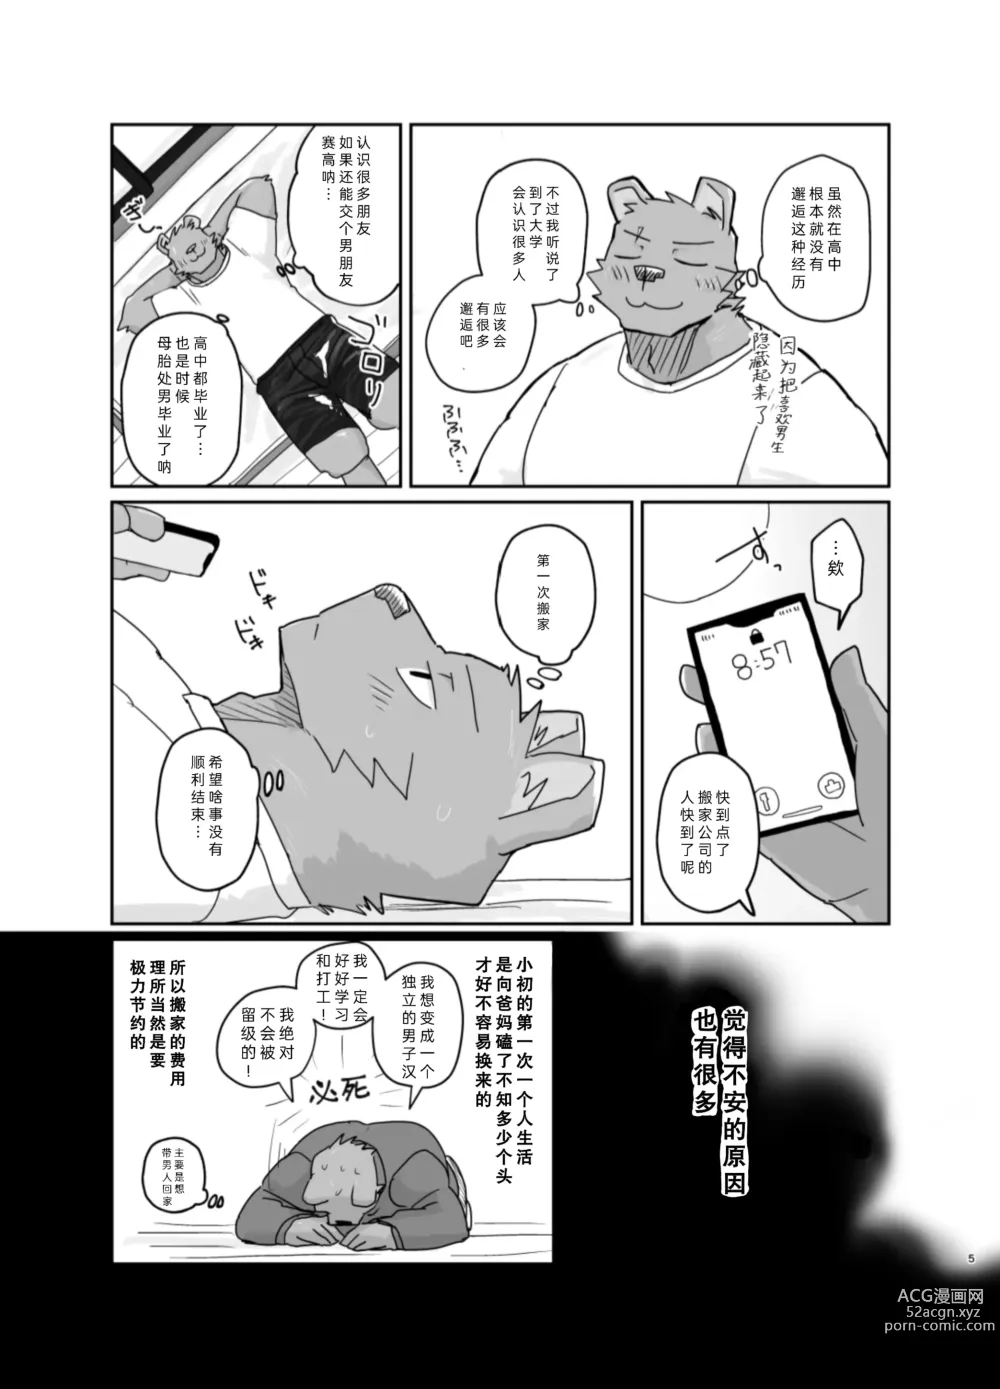 Page 5 of doujinshi 搬家的十分钟服务